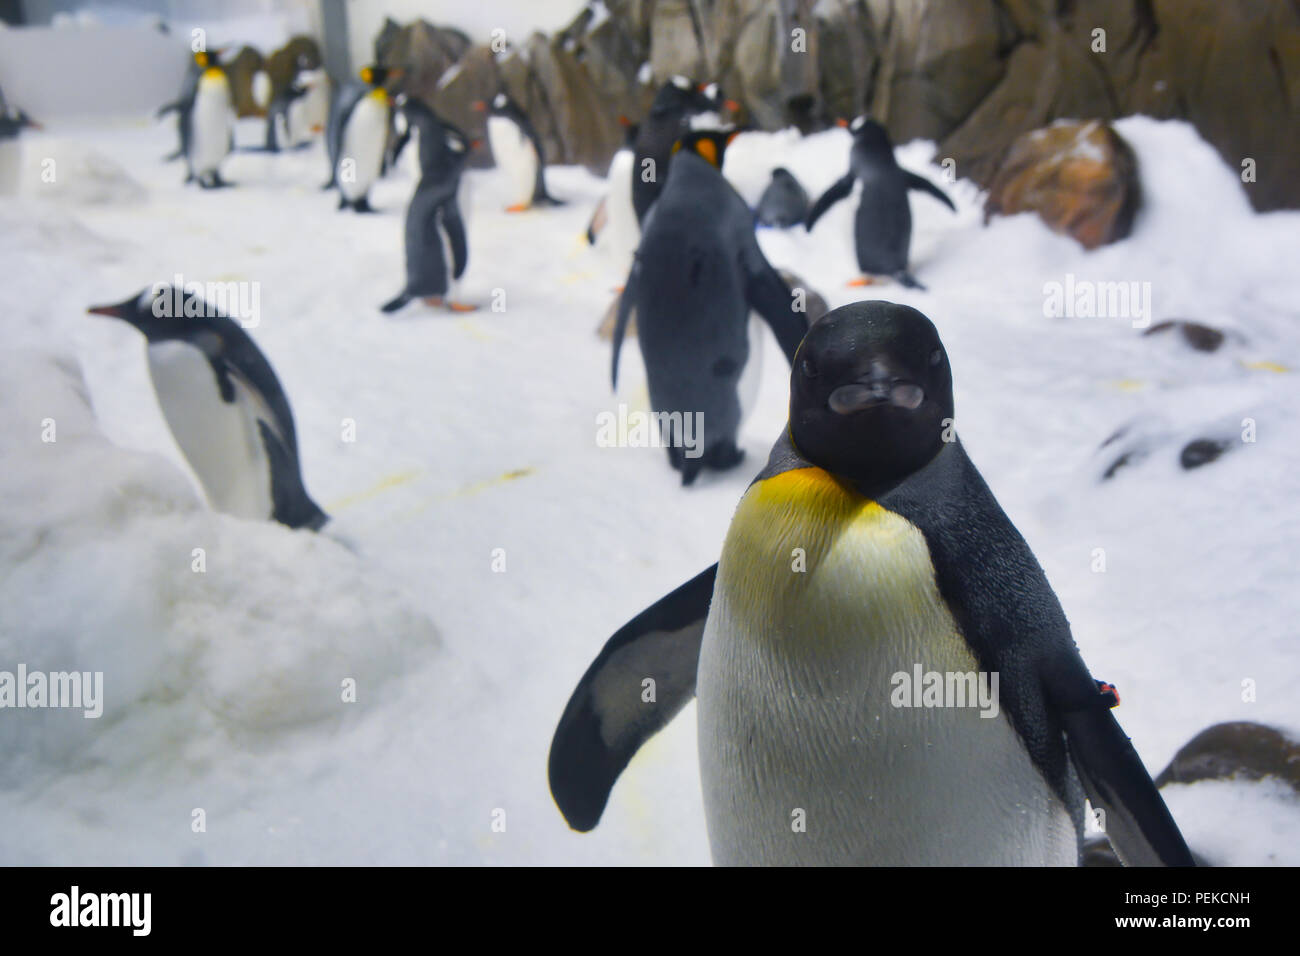 Penguins walk on ice Stock Photo